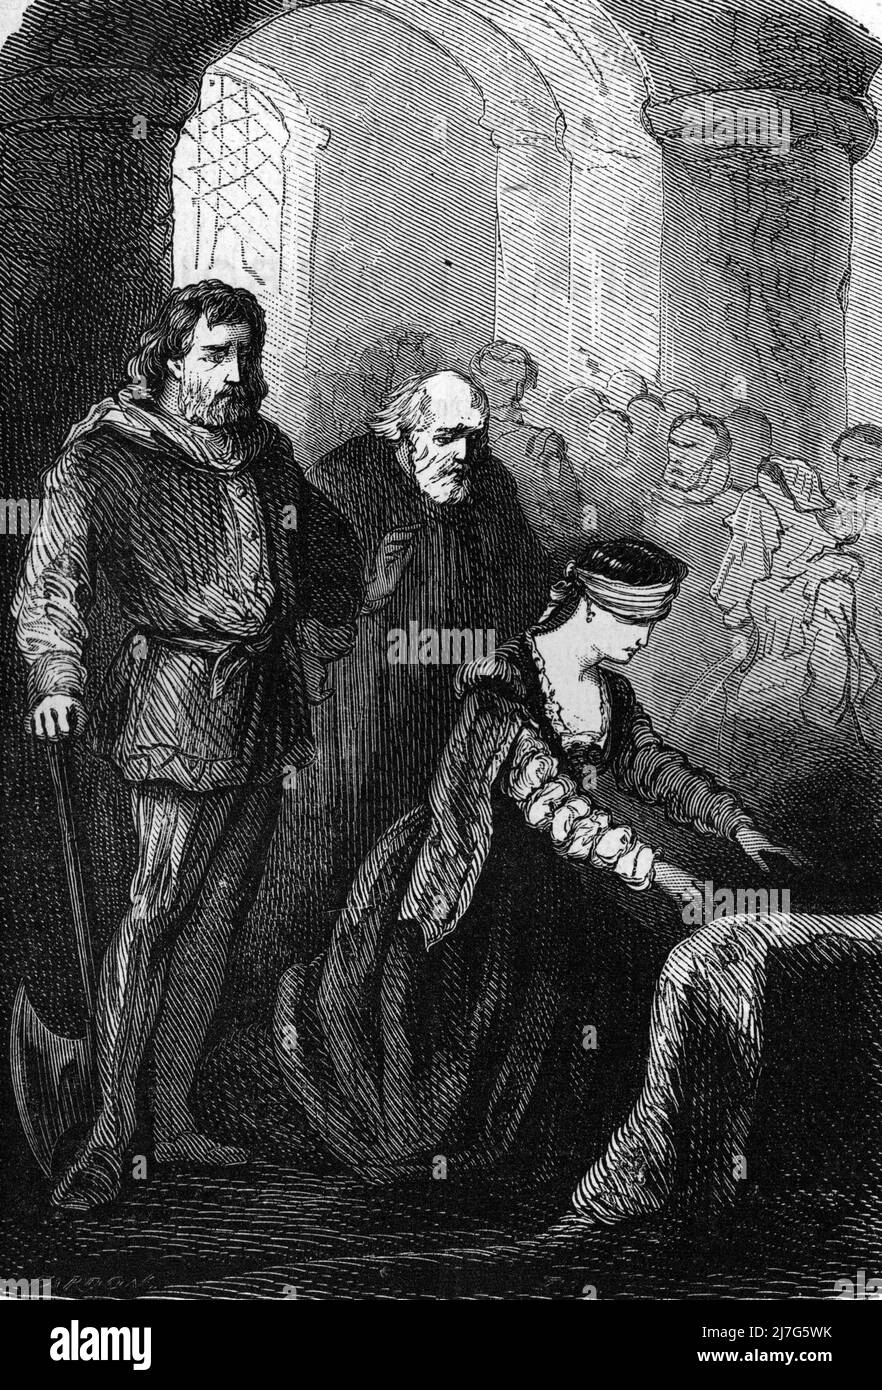 'L'exécution de marie Stuart (1542-1587) au château de Fotheringhay le 8 fevrier 1587' (exécution de Mary Stuart 1587) Grature tiree de 'les mystérieuses du grand monde' de Fulgence Girard Collection privee Banque D'Images